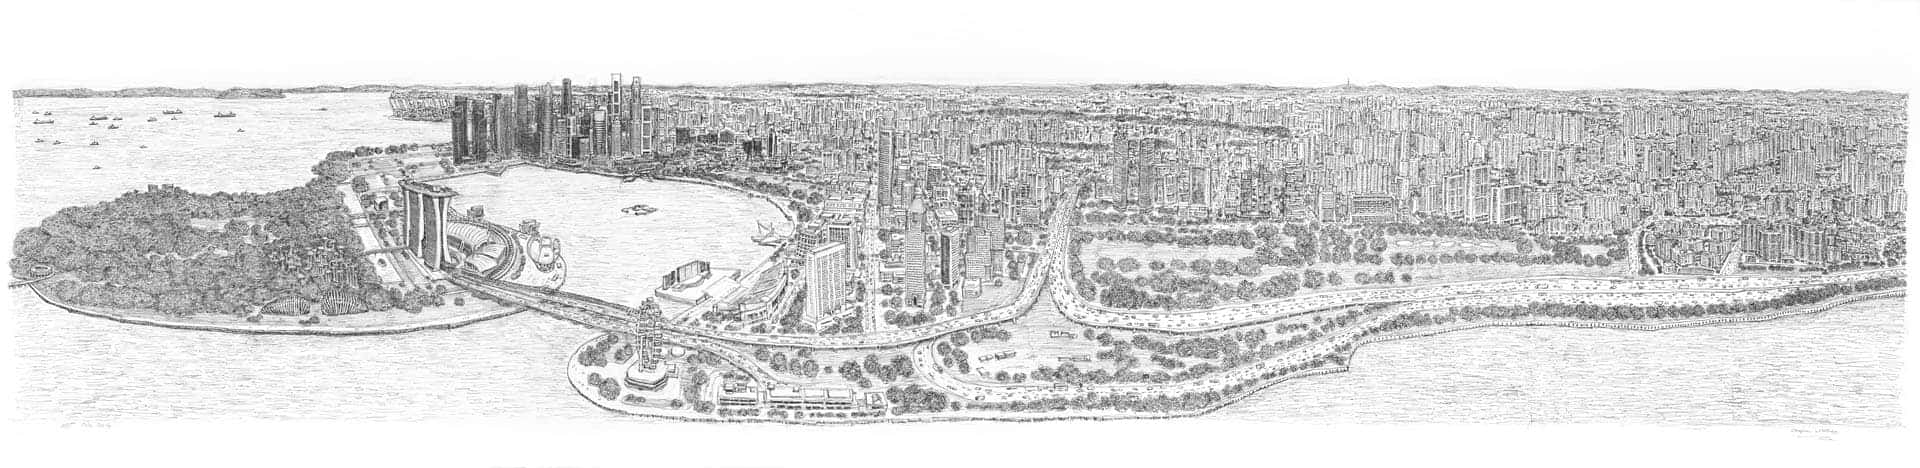 Stephen Wiltshire draws Singapore Panorama